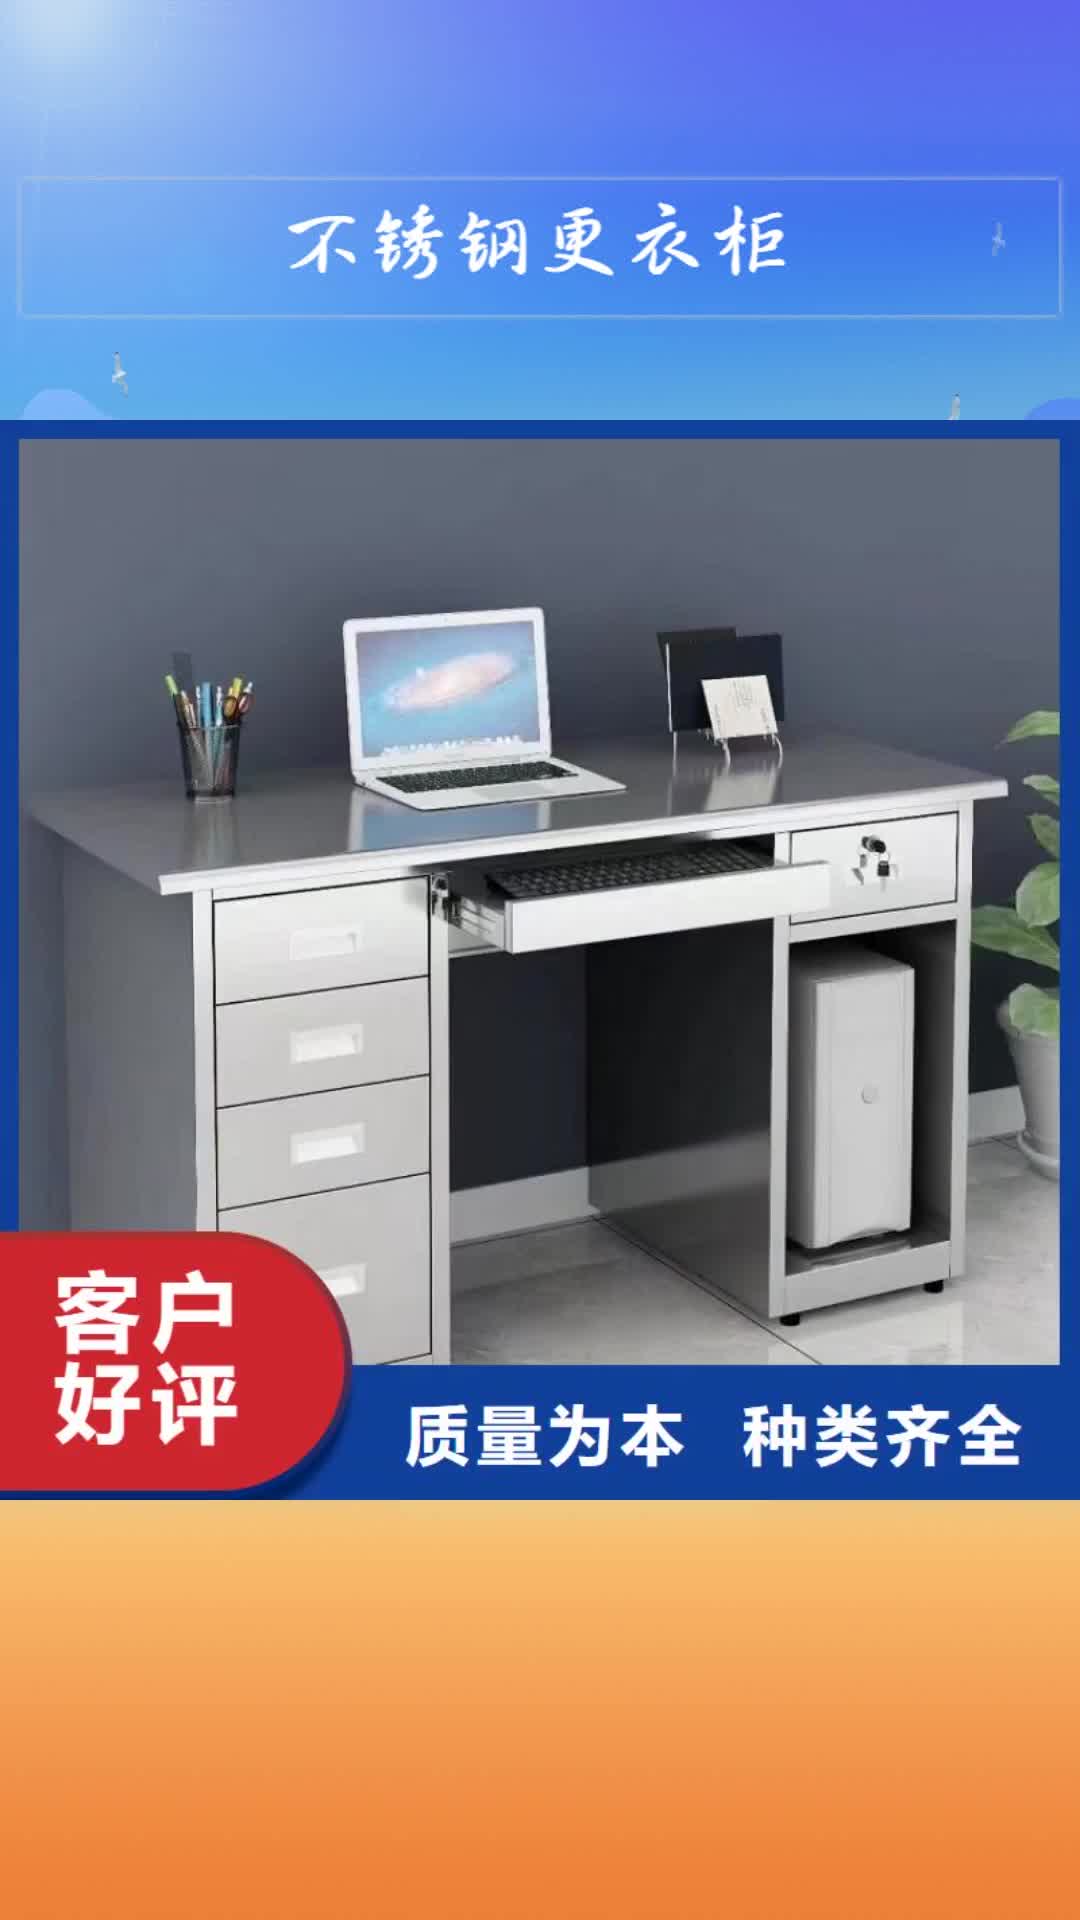 台湾【不锈钢更衣柜】,学习桌好产品不怕比